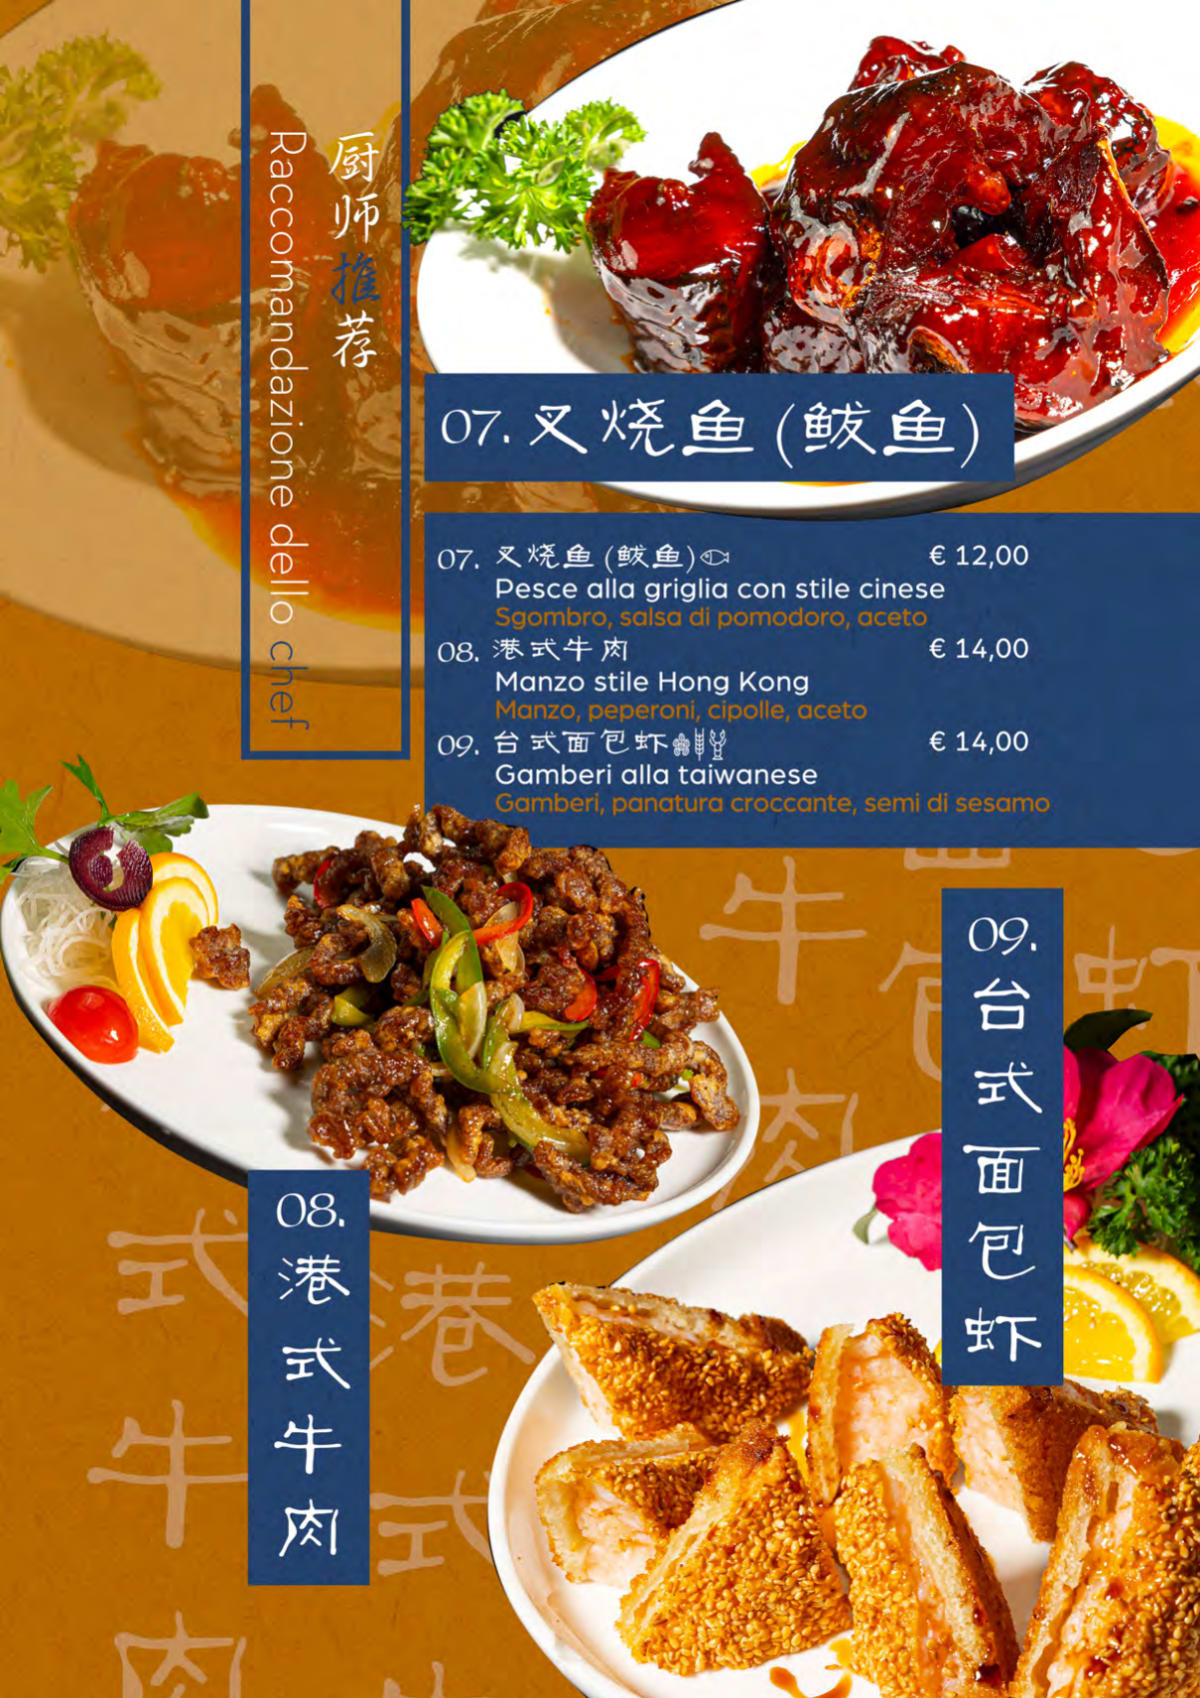 东北往事 - Ristorante Cinese menu